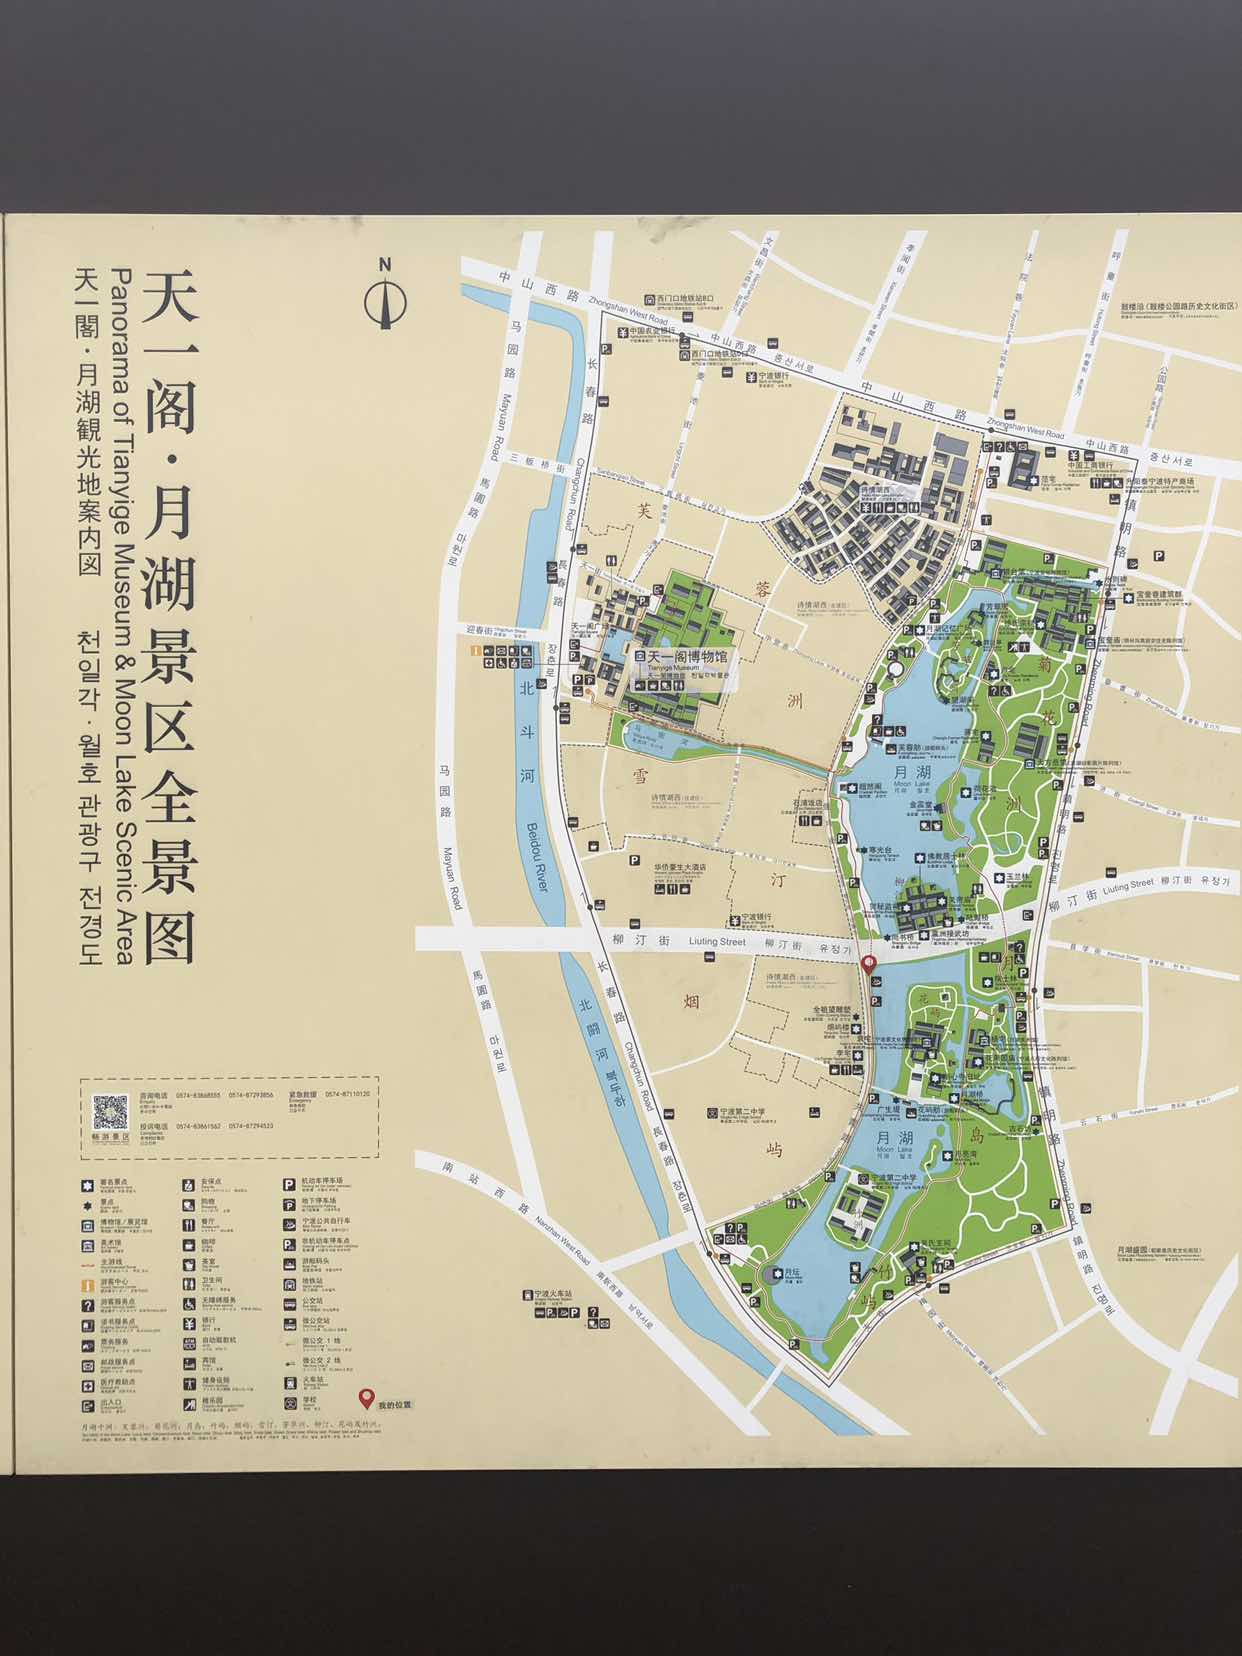 南京月牙湖地图图片